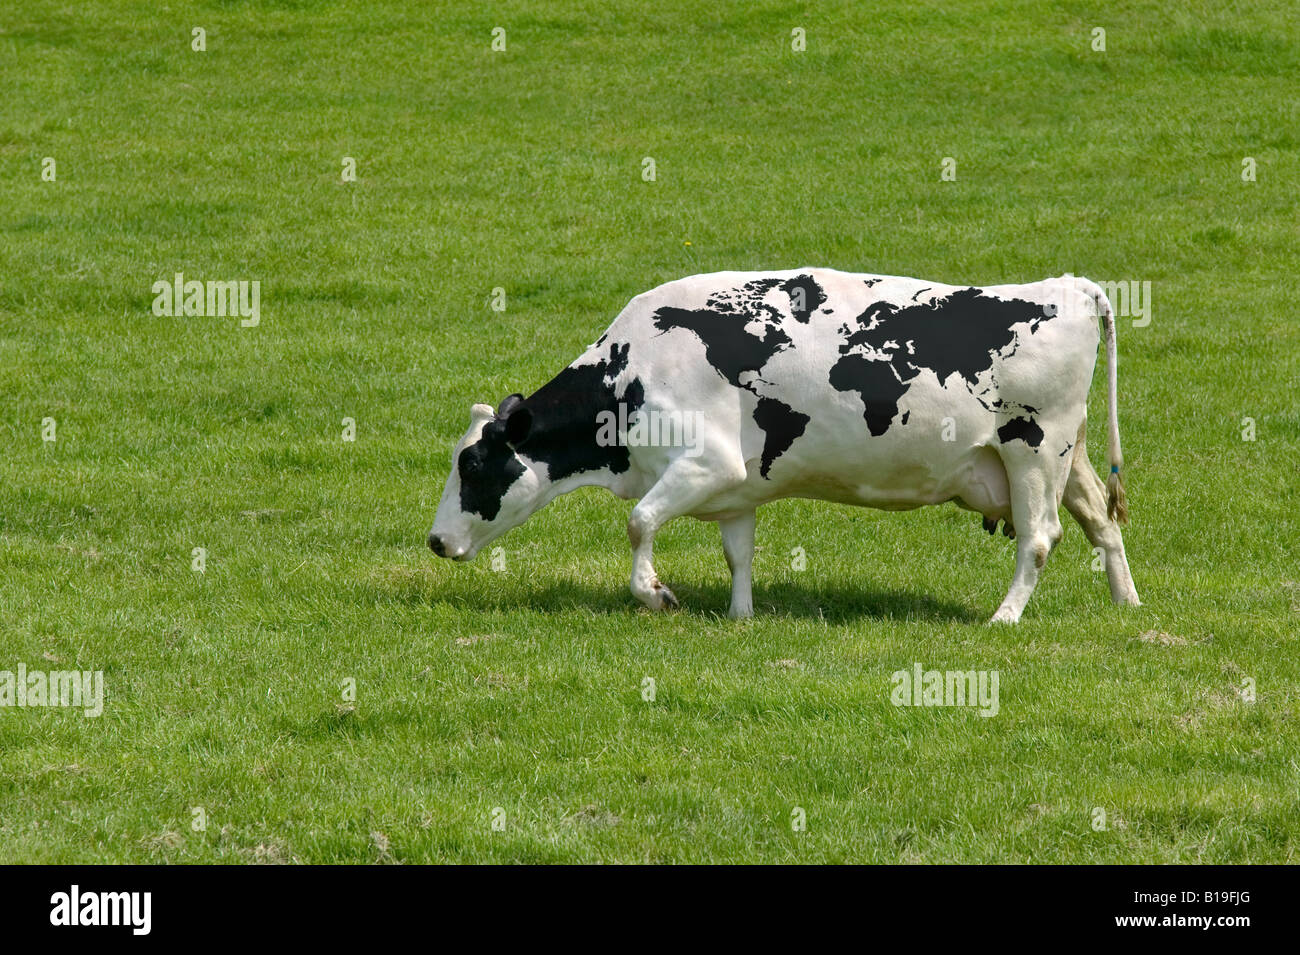 Une vache laitière avec la carte du monde les marquages Banque D'Images